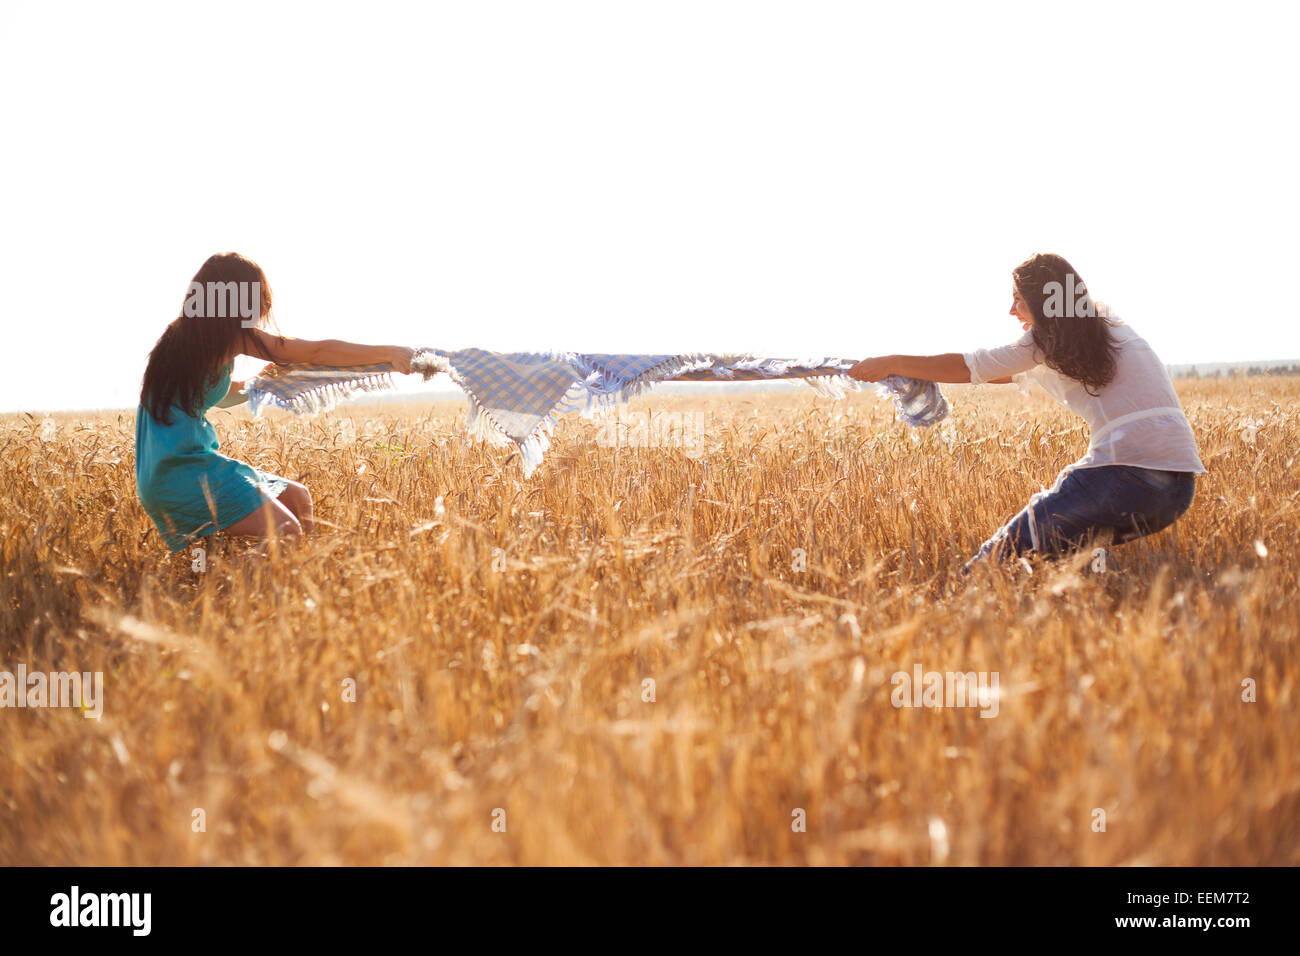 Les femmes de race blanche jouant à la corde in rural field Banque D'Images